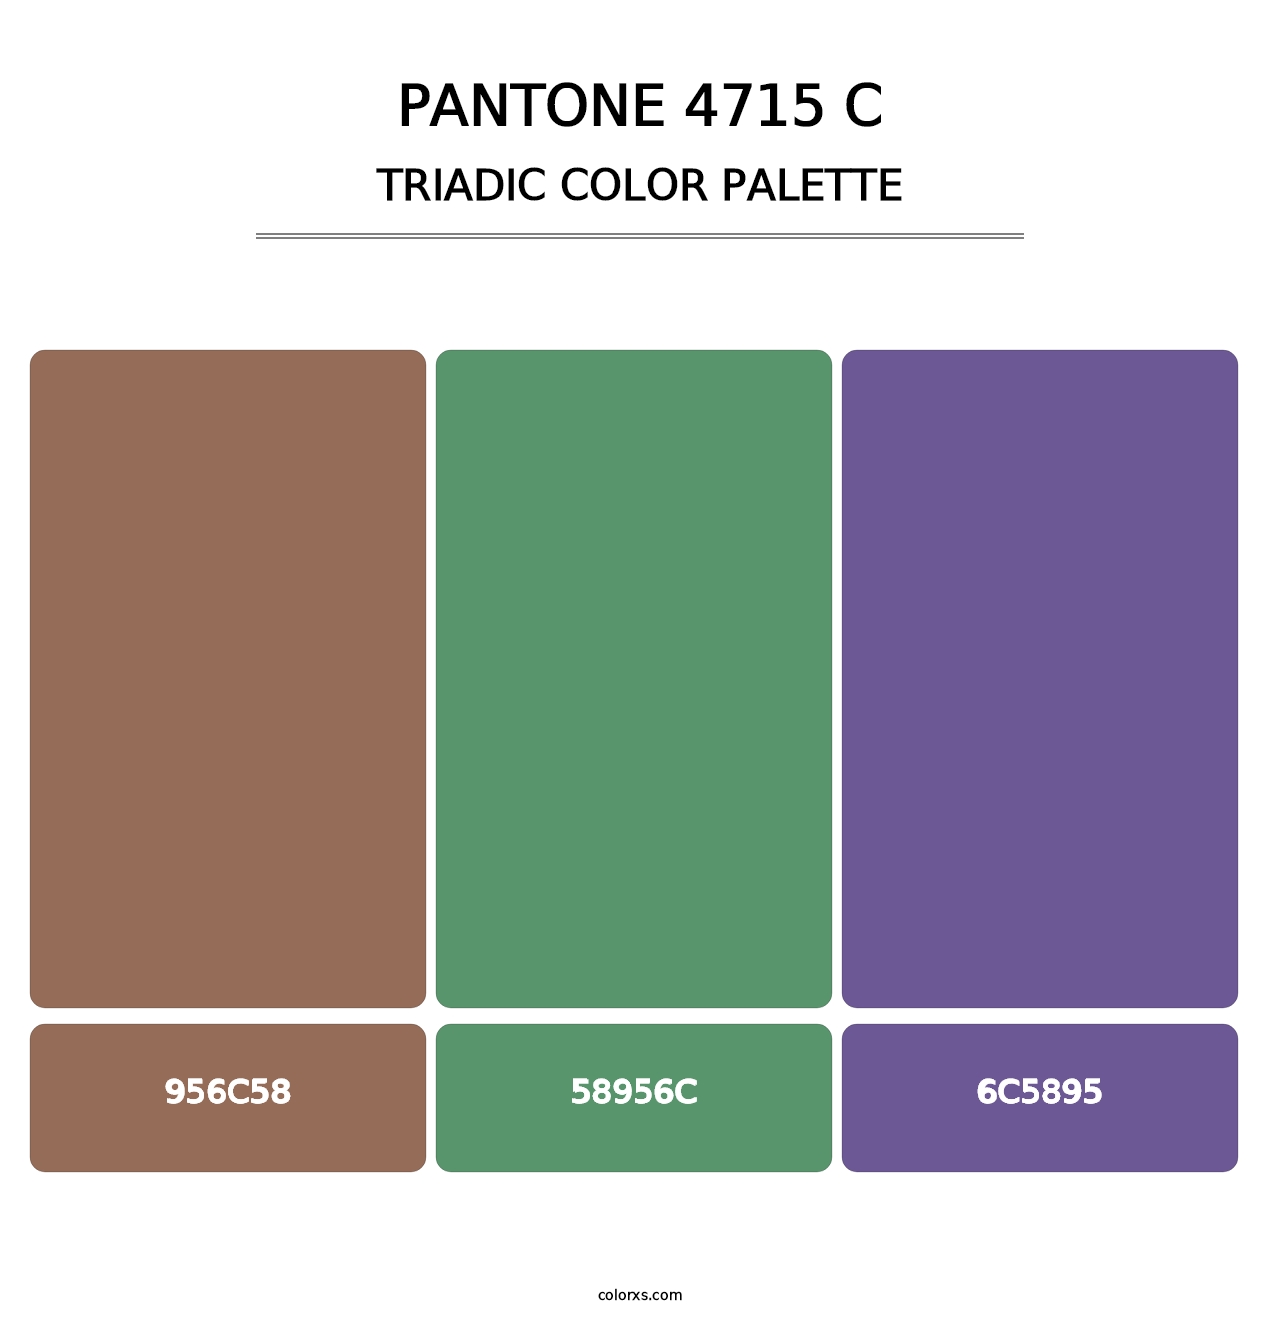 PANTONE 4715 C - Triadic Color Palette